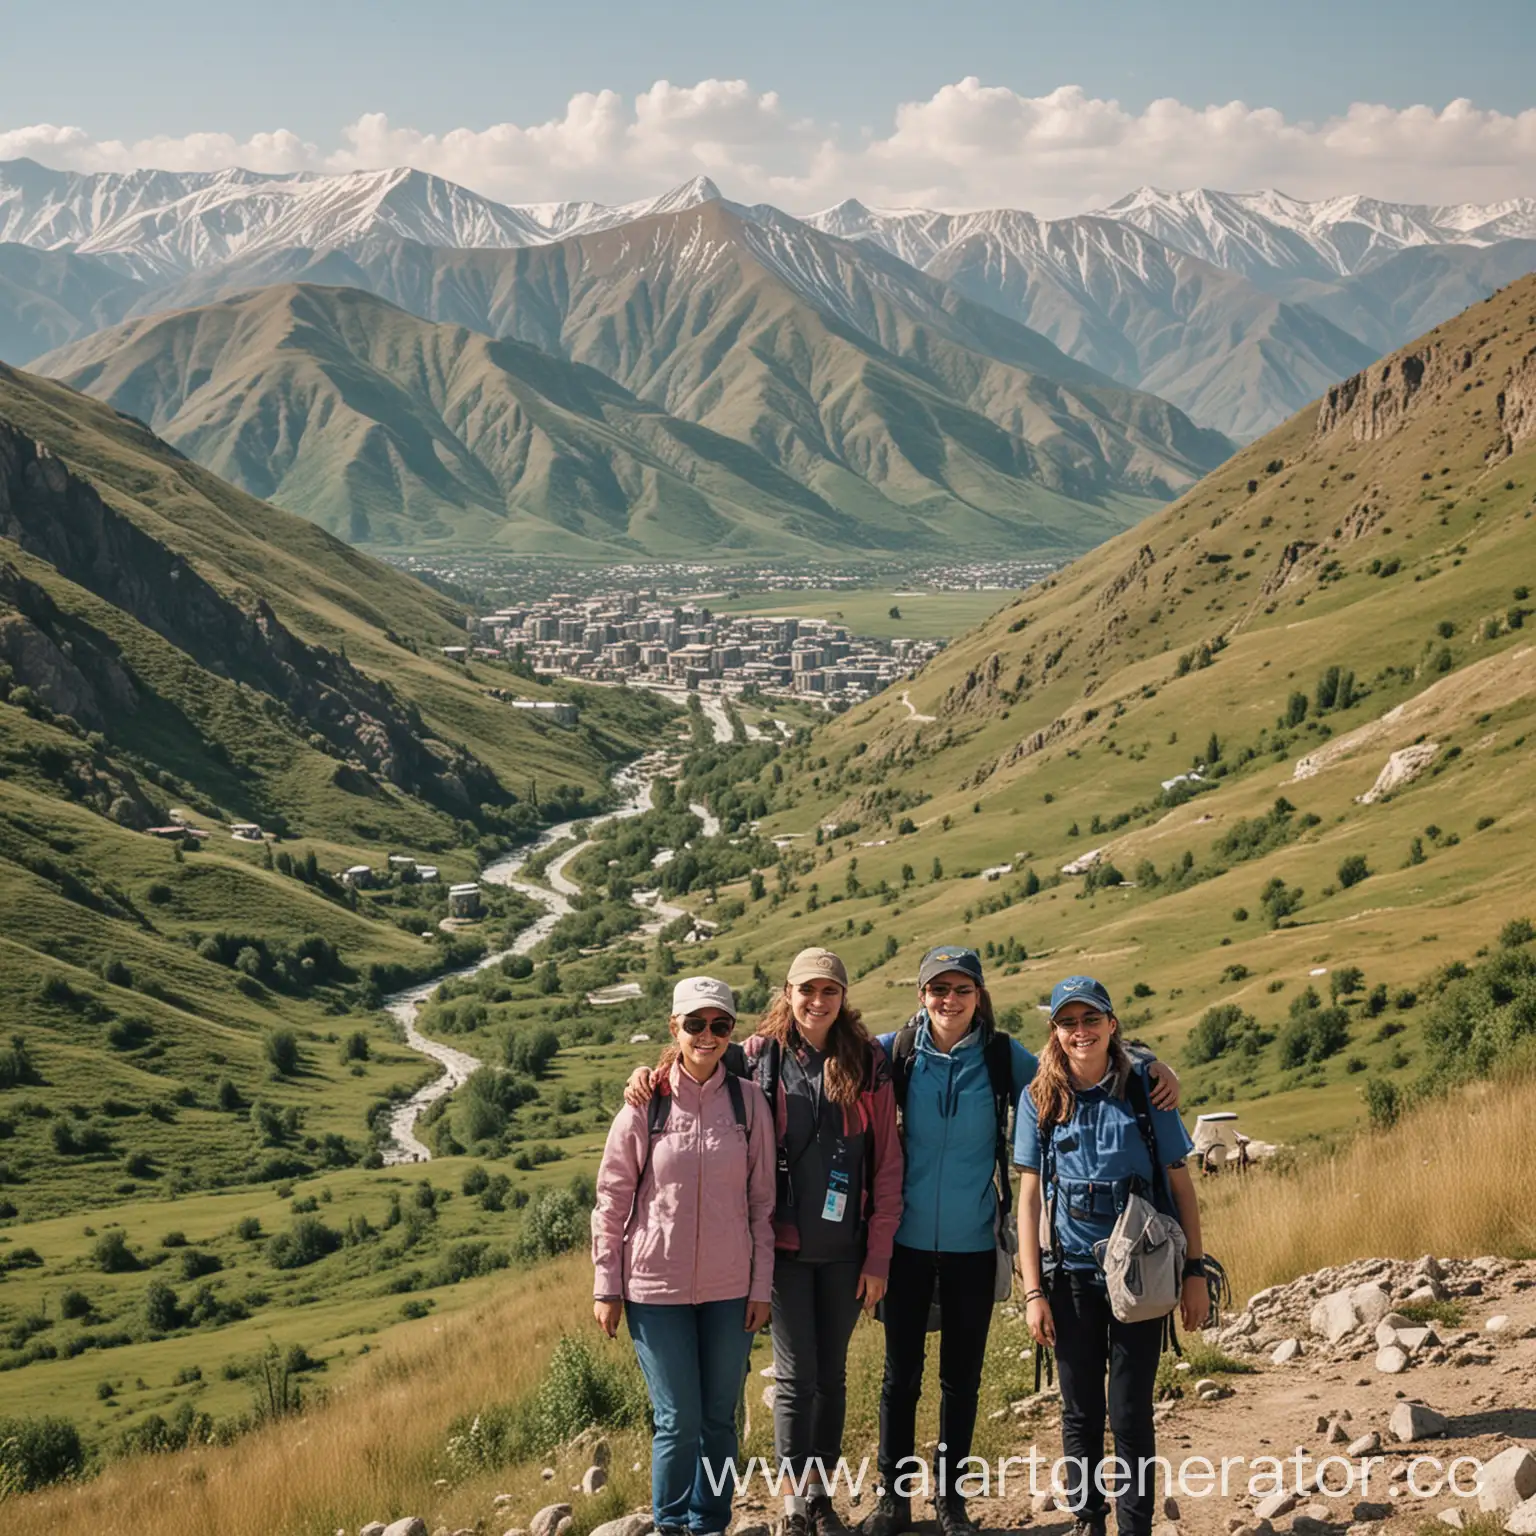 Happy-Tourists-Enjoying-Dagestani-Mountain-Landscape